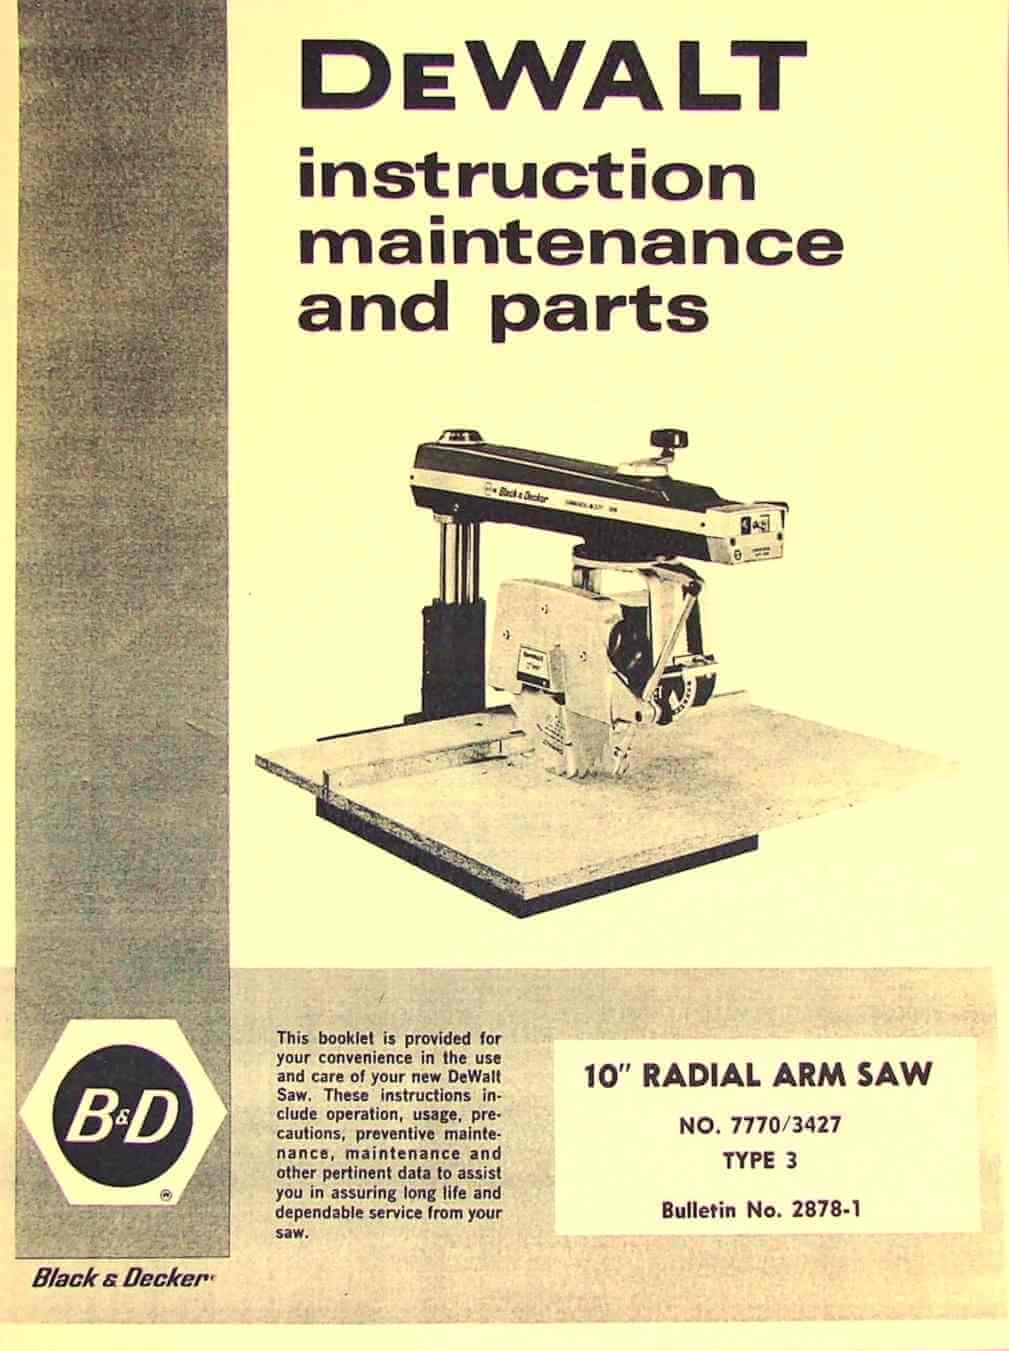 DeWalt Model GE Manual Radial Arm Saw Instructions 